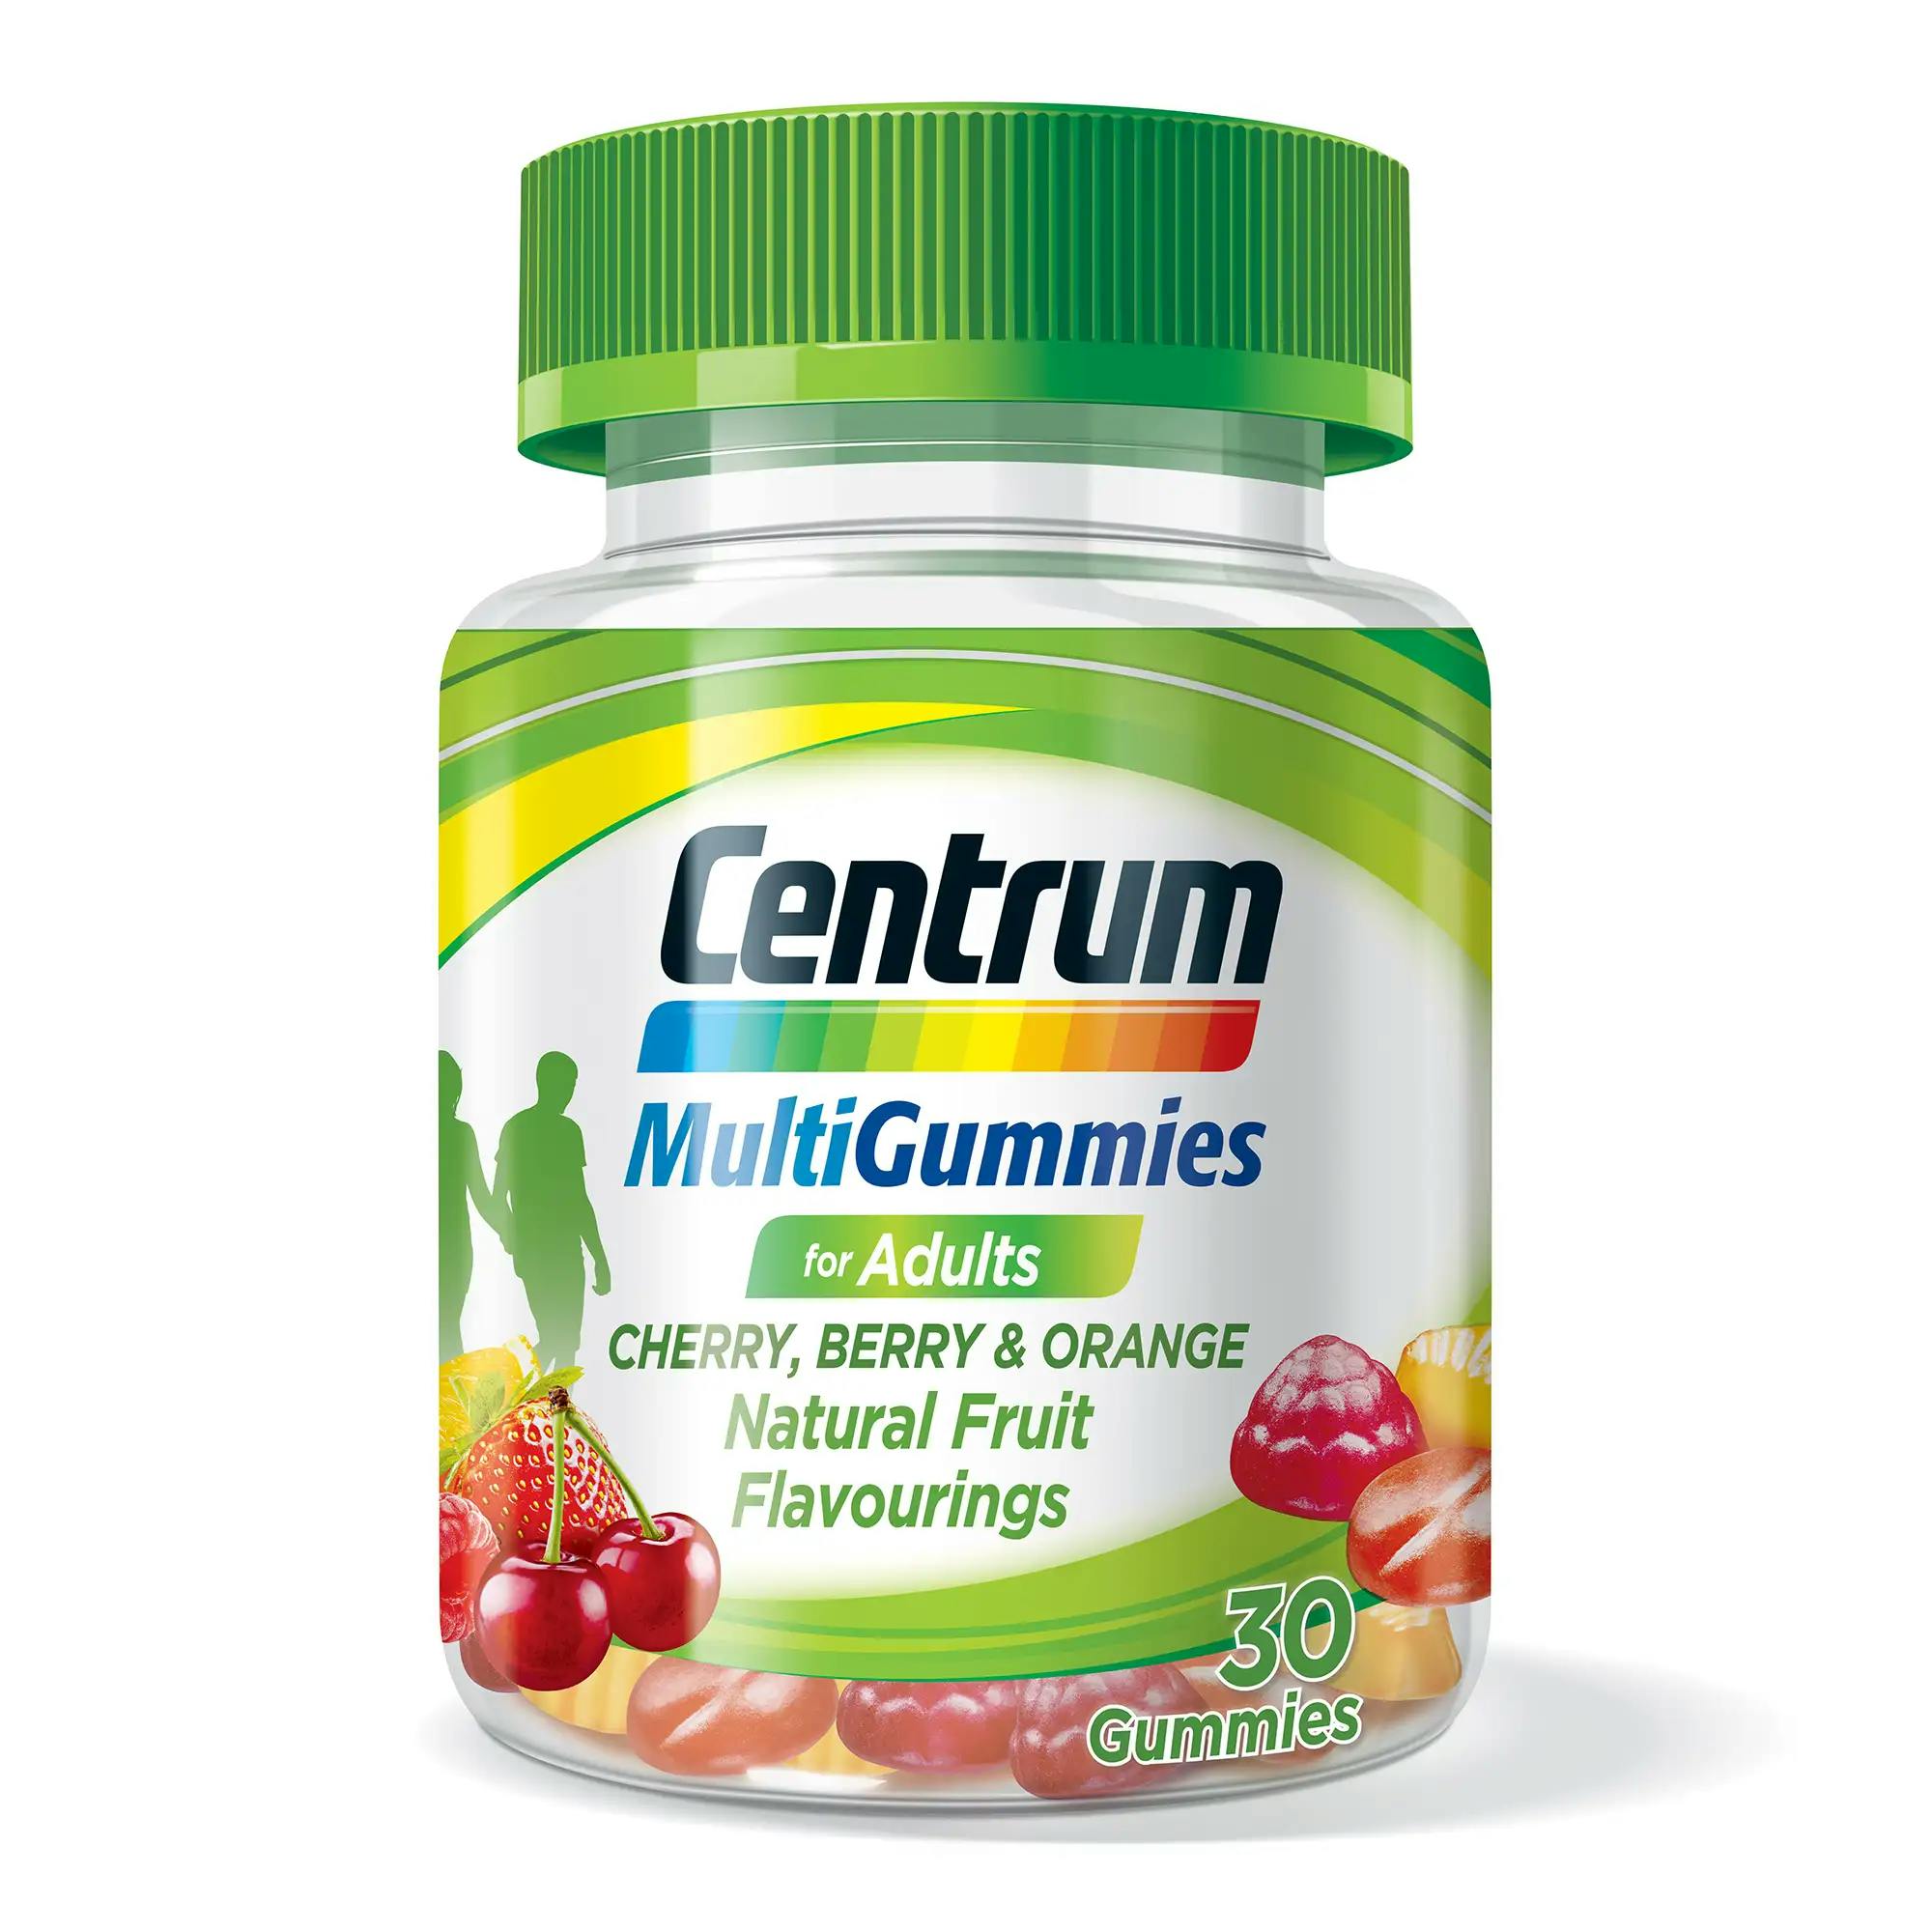 Bottle of centrum MultiGummies adult vitamins